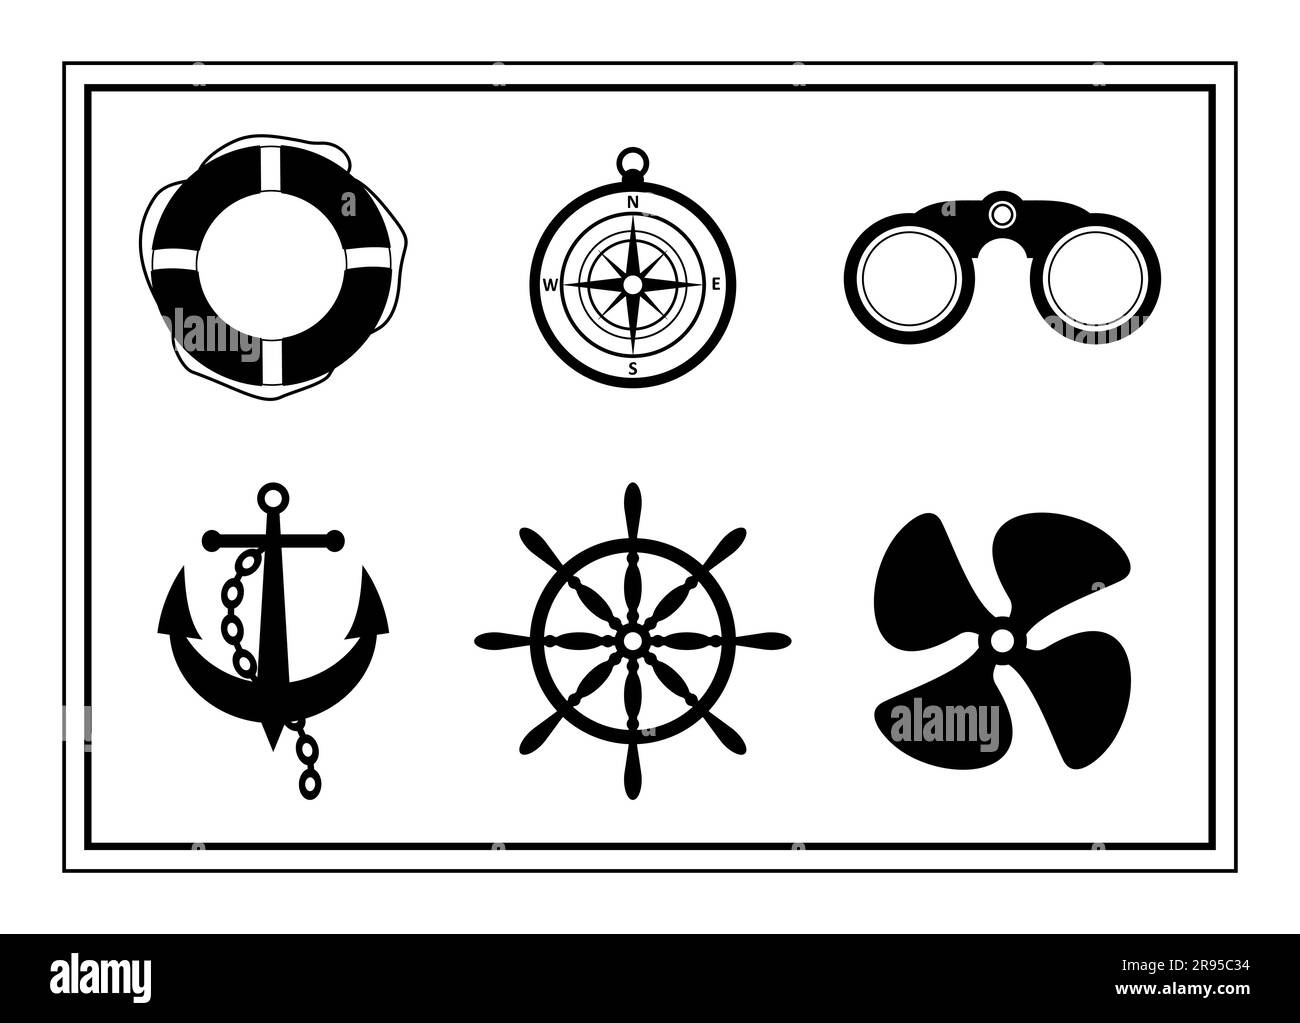 Vektorsatz von schwarzen realistischen nautischen Symbolen. Rettungsring, Kompass, Anker mit Kette, Lenkrad, Fernglas und Schiffspropeller auf weißem Hintergrund Stock Vektor